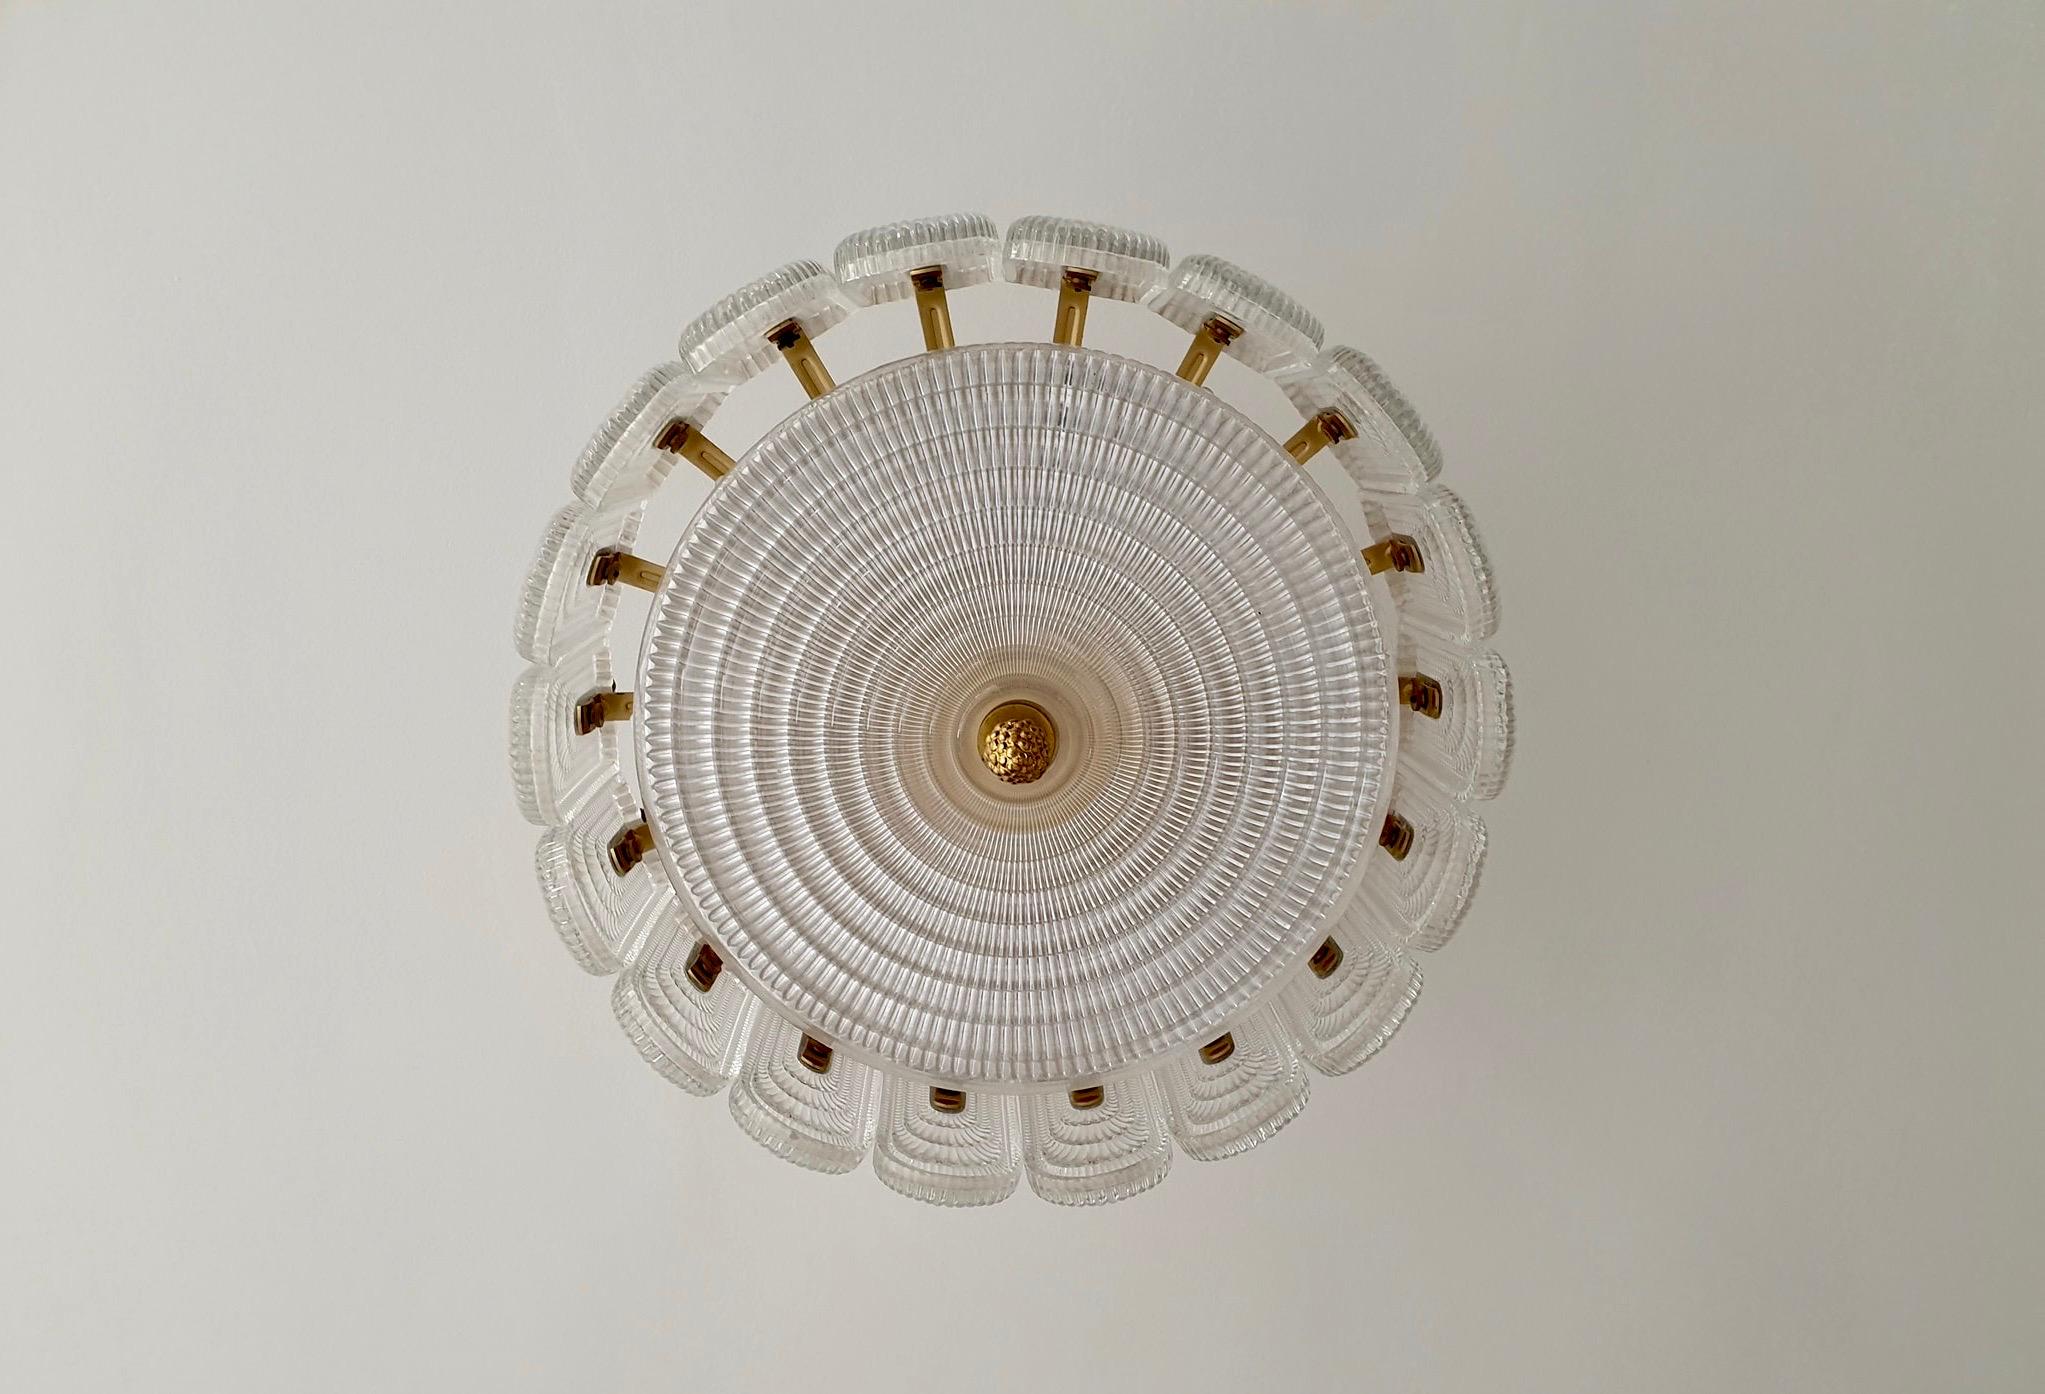 Italian brass and Murano glass flush mount light.
Measures: Diameter 50 cm.
Height 47 cm.